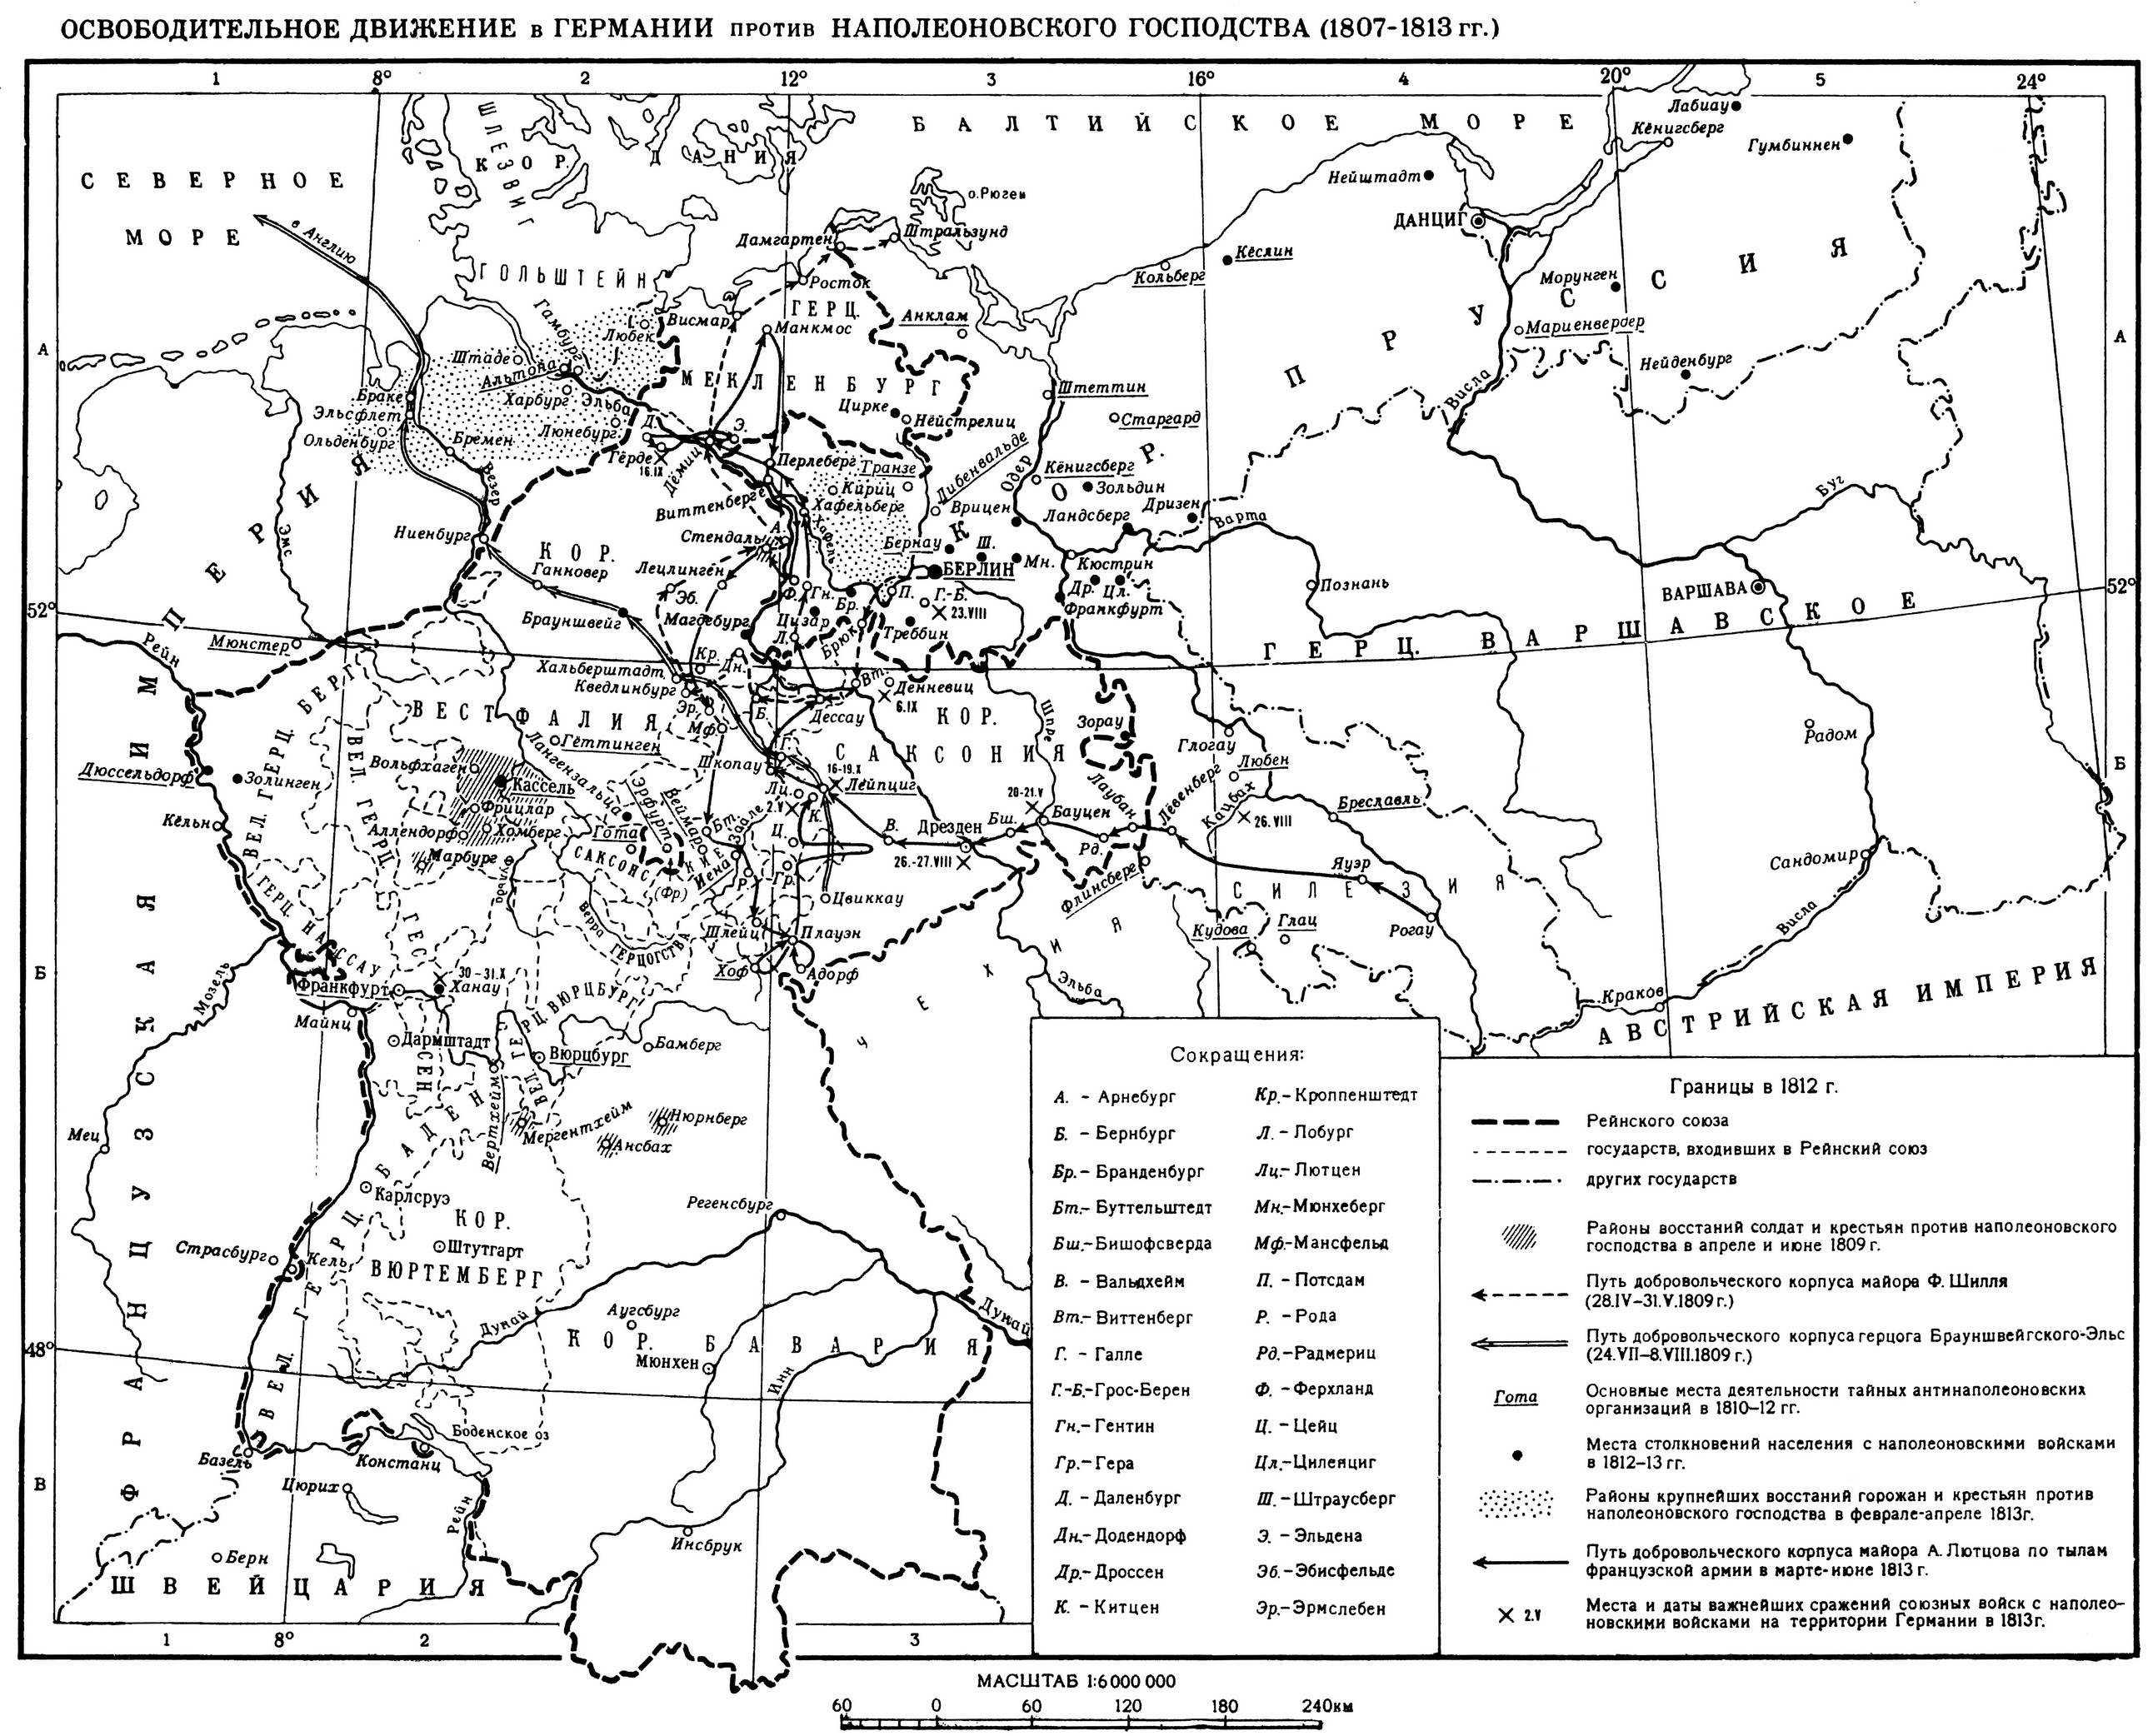 освободительное движение в Германии против Наполеоновского господства 1807-1813 годов карта